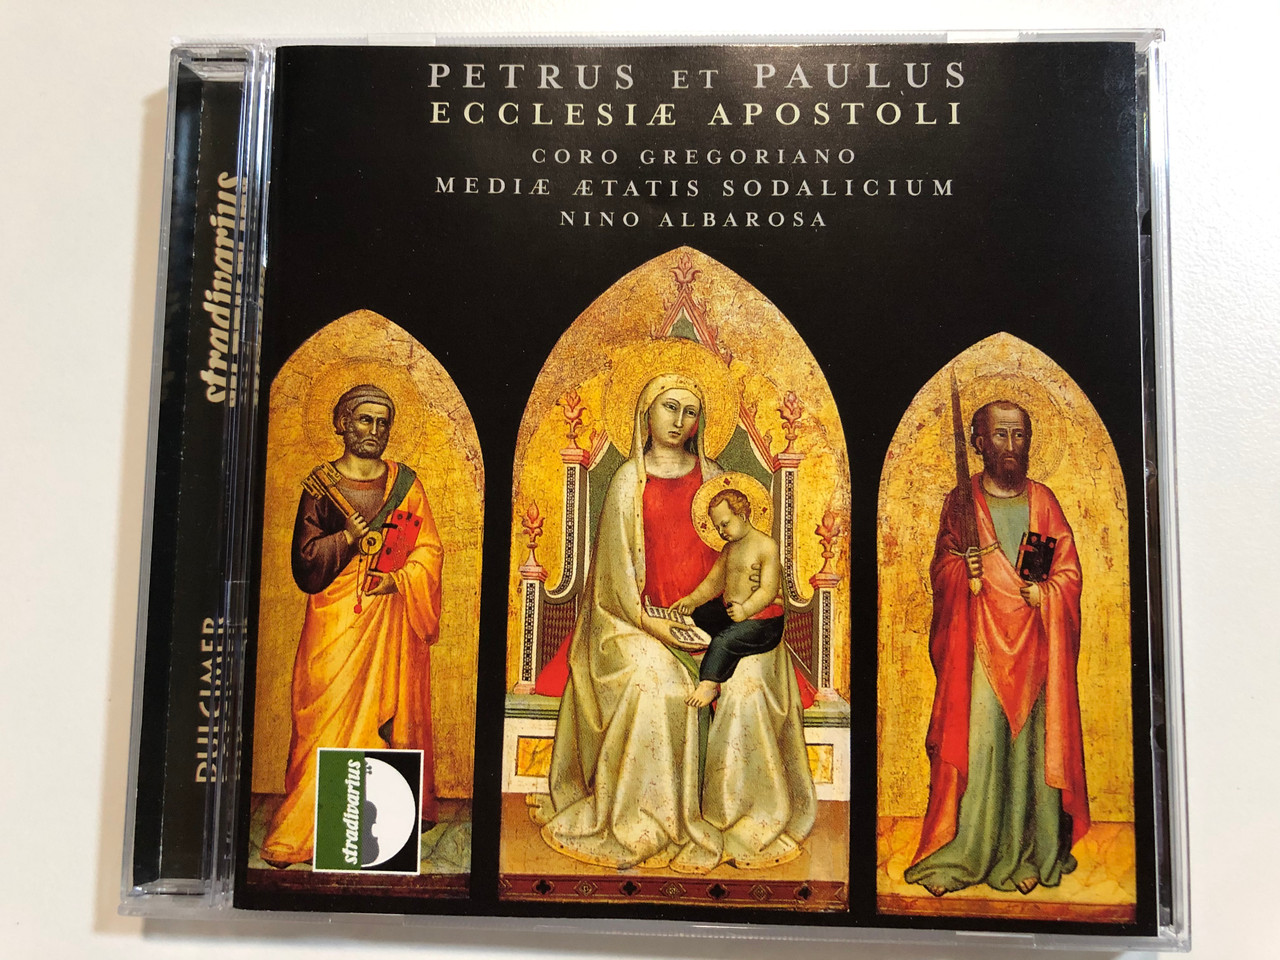 Petrus Et Paulus - Ecclesiae Apostoli / Coro Gregoriano, Mediae Aetatis  Sodalicium, Nino Albarosa / Stradivarius Audio CD 2003 / STR 33600 -  bibleinmylanguage